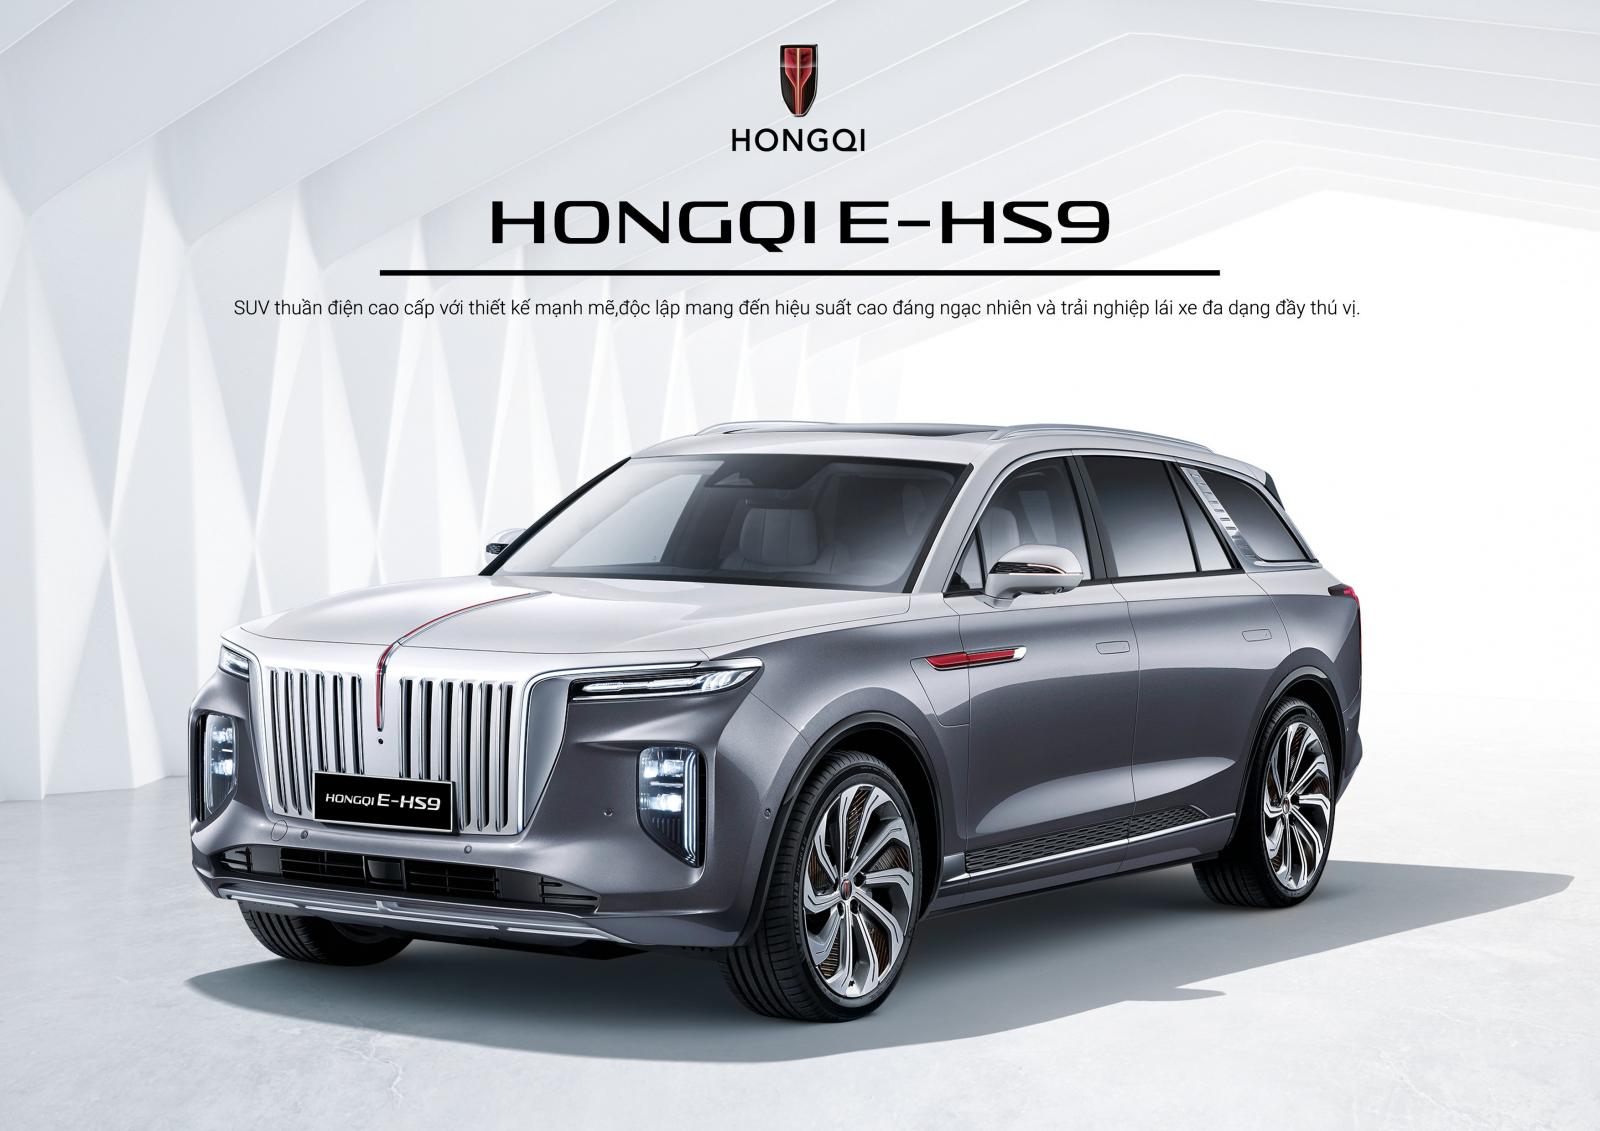 Giá xe Hongqi E-HS9 mới nhất.